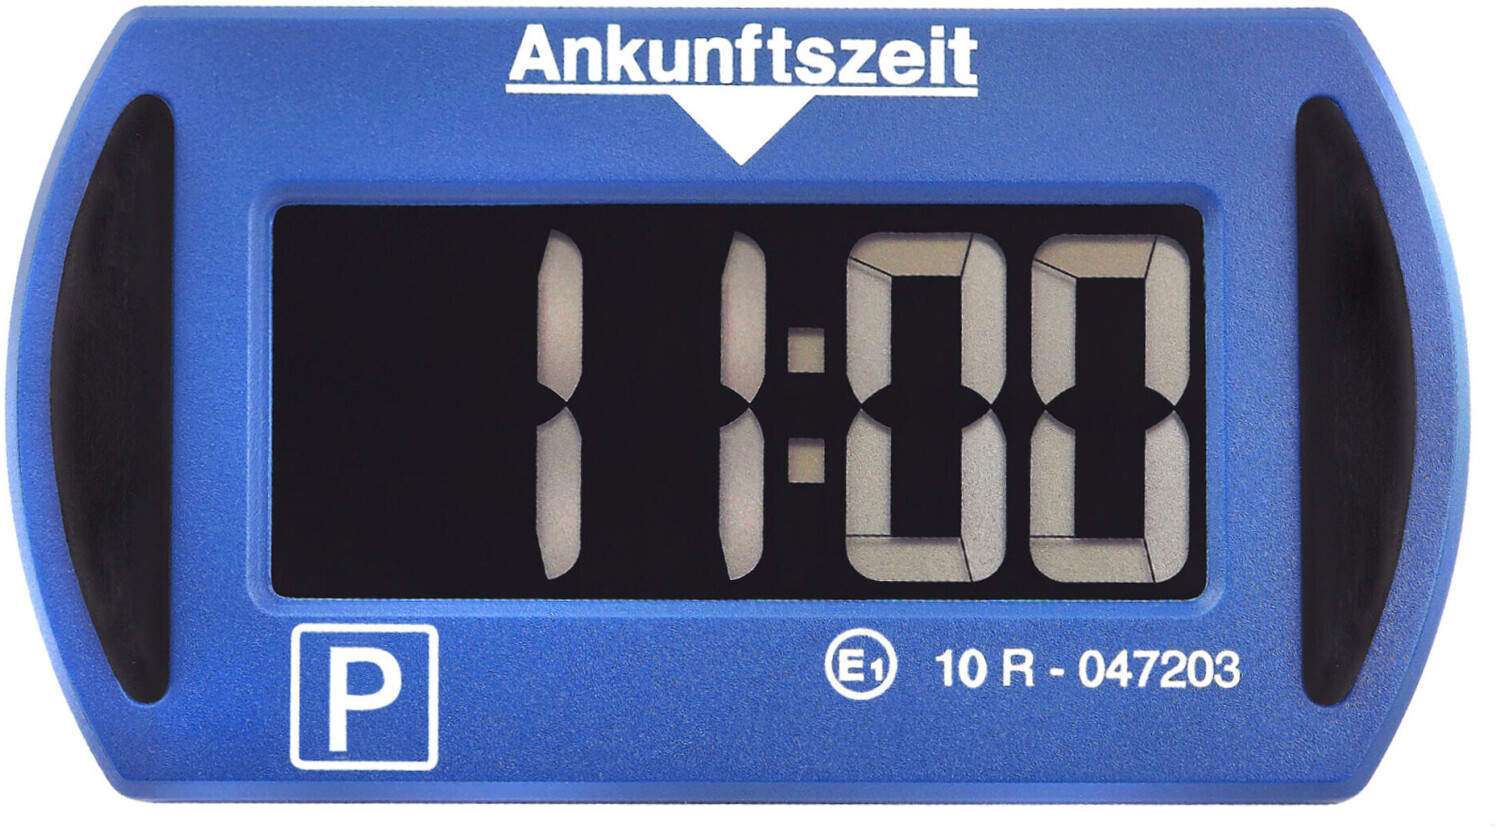 Needit PARK Mini 3011 ab 22,50 € günstig im Preisvergleich kaufen